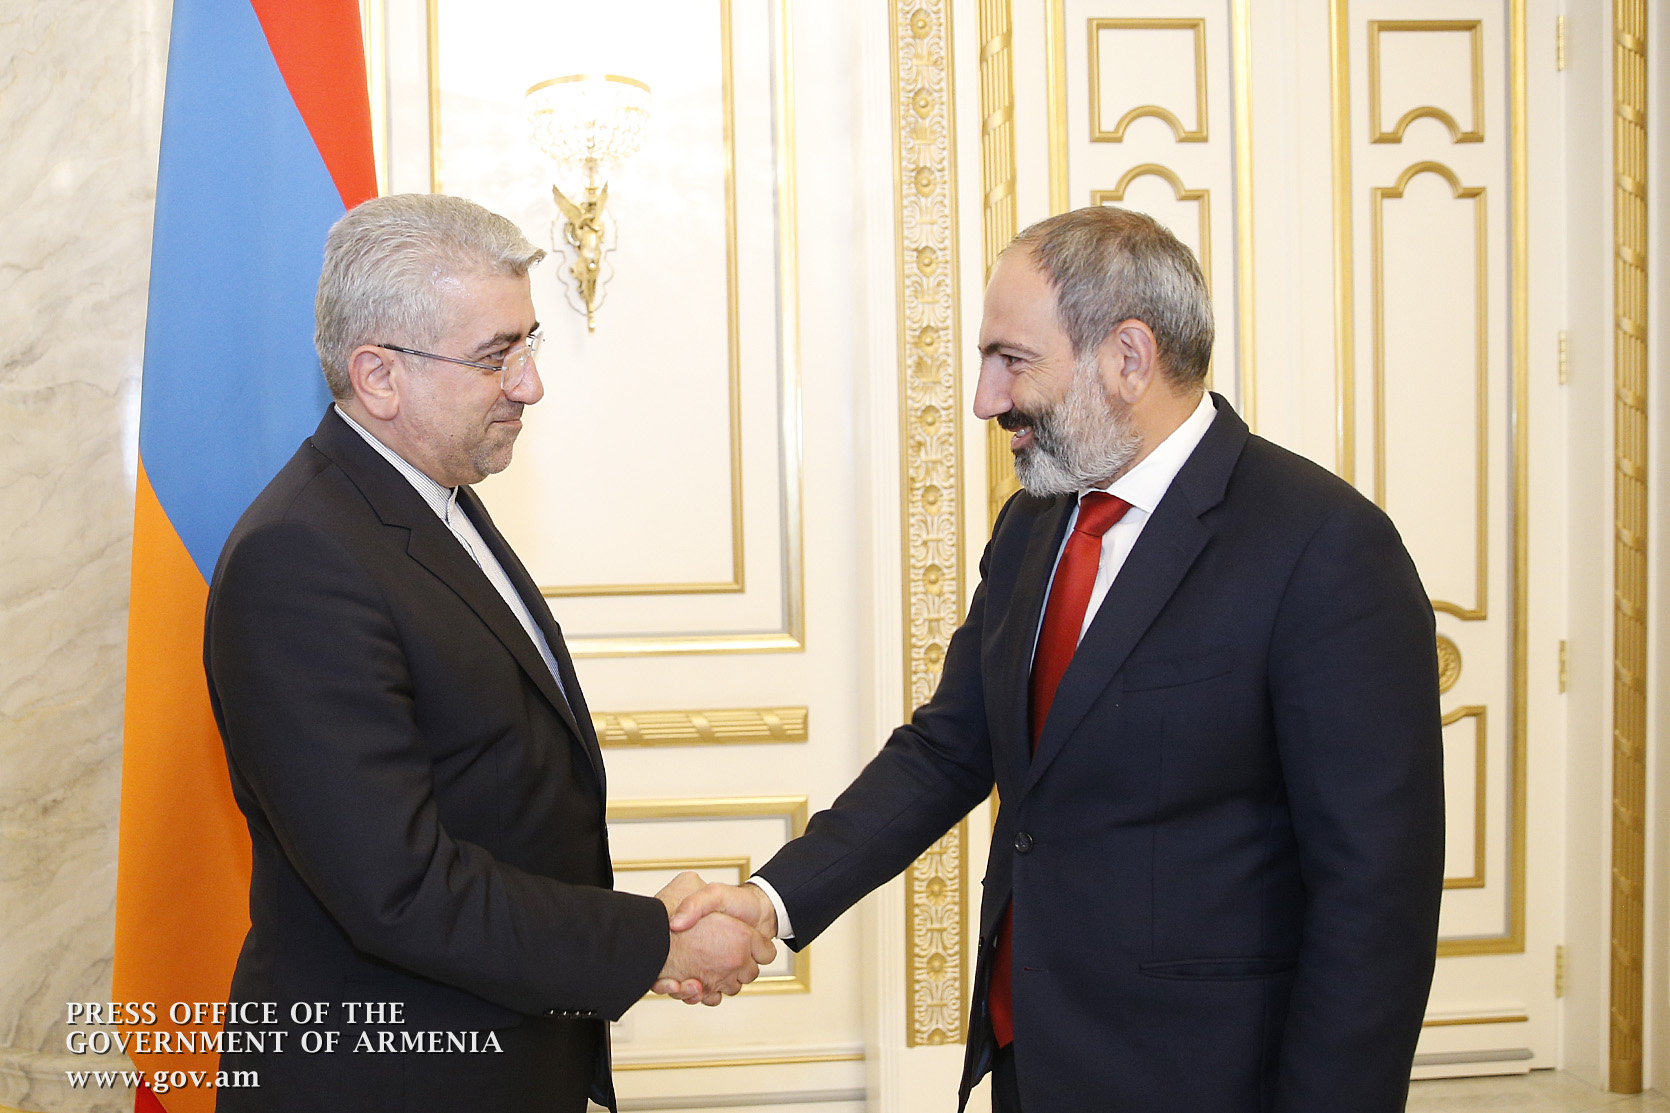 Никол Пашинян обсудил с Резой Ардаканианом вопросы расширения армяно-иранских экономических связей